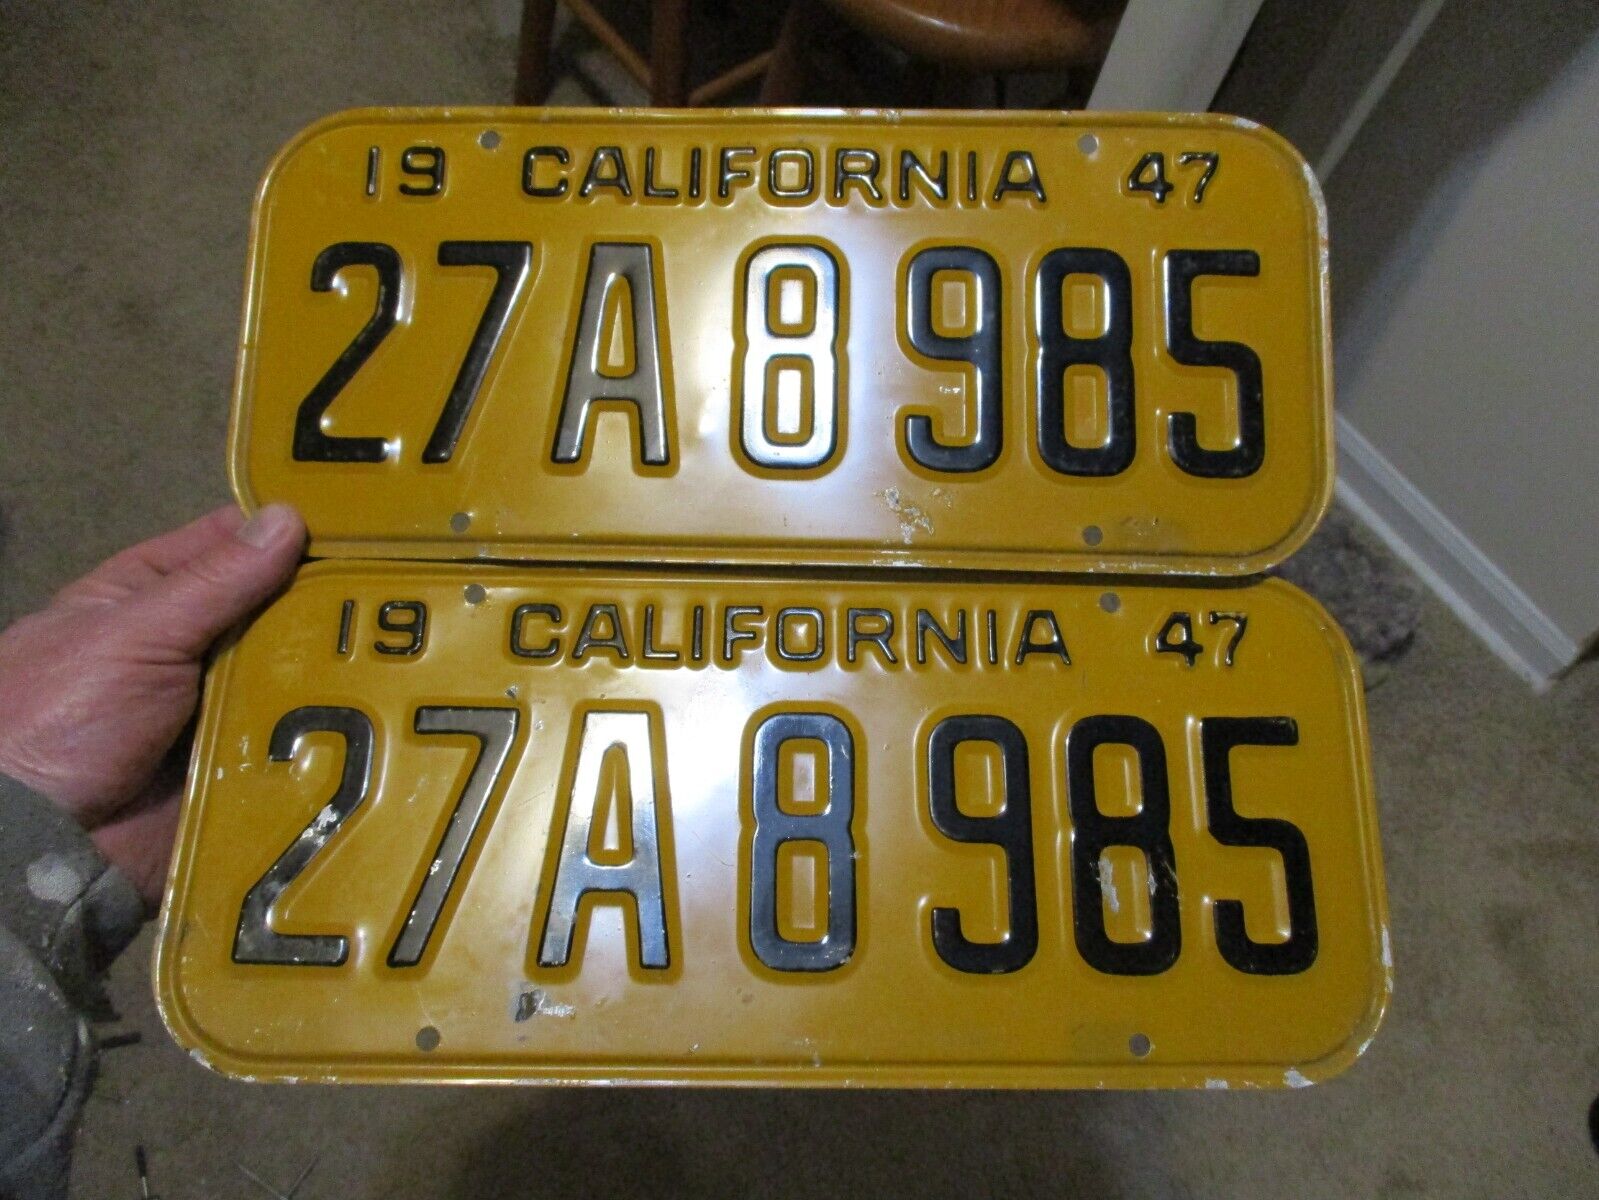 1947 CALIFORNIA PAIR LICENSE PLATES 27A8985